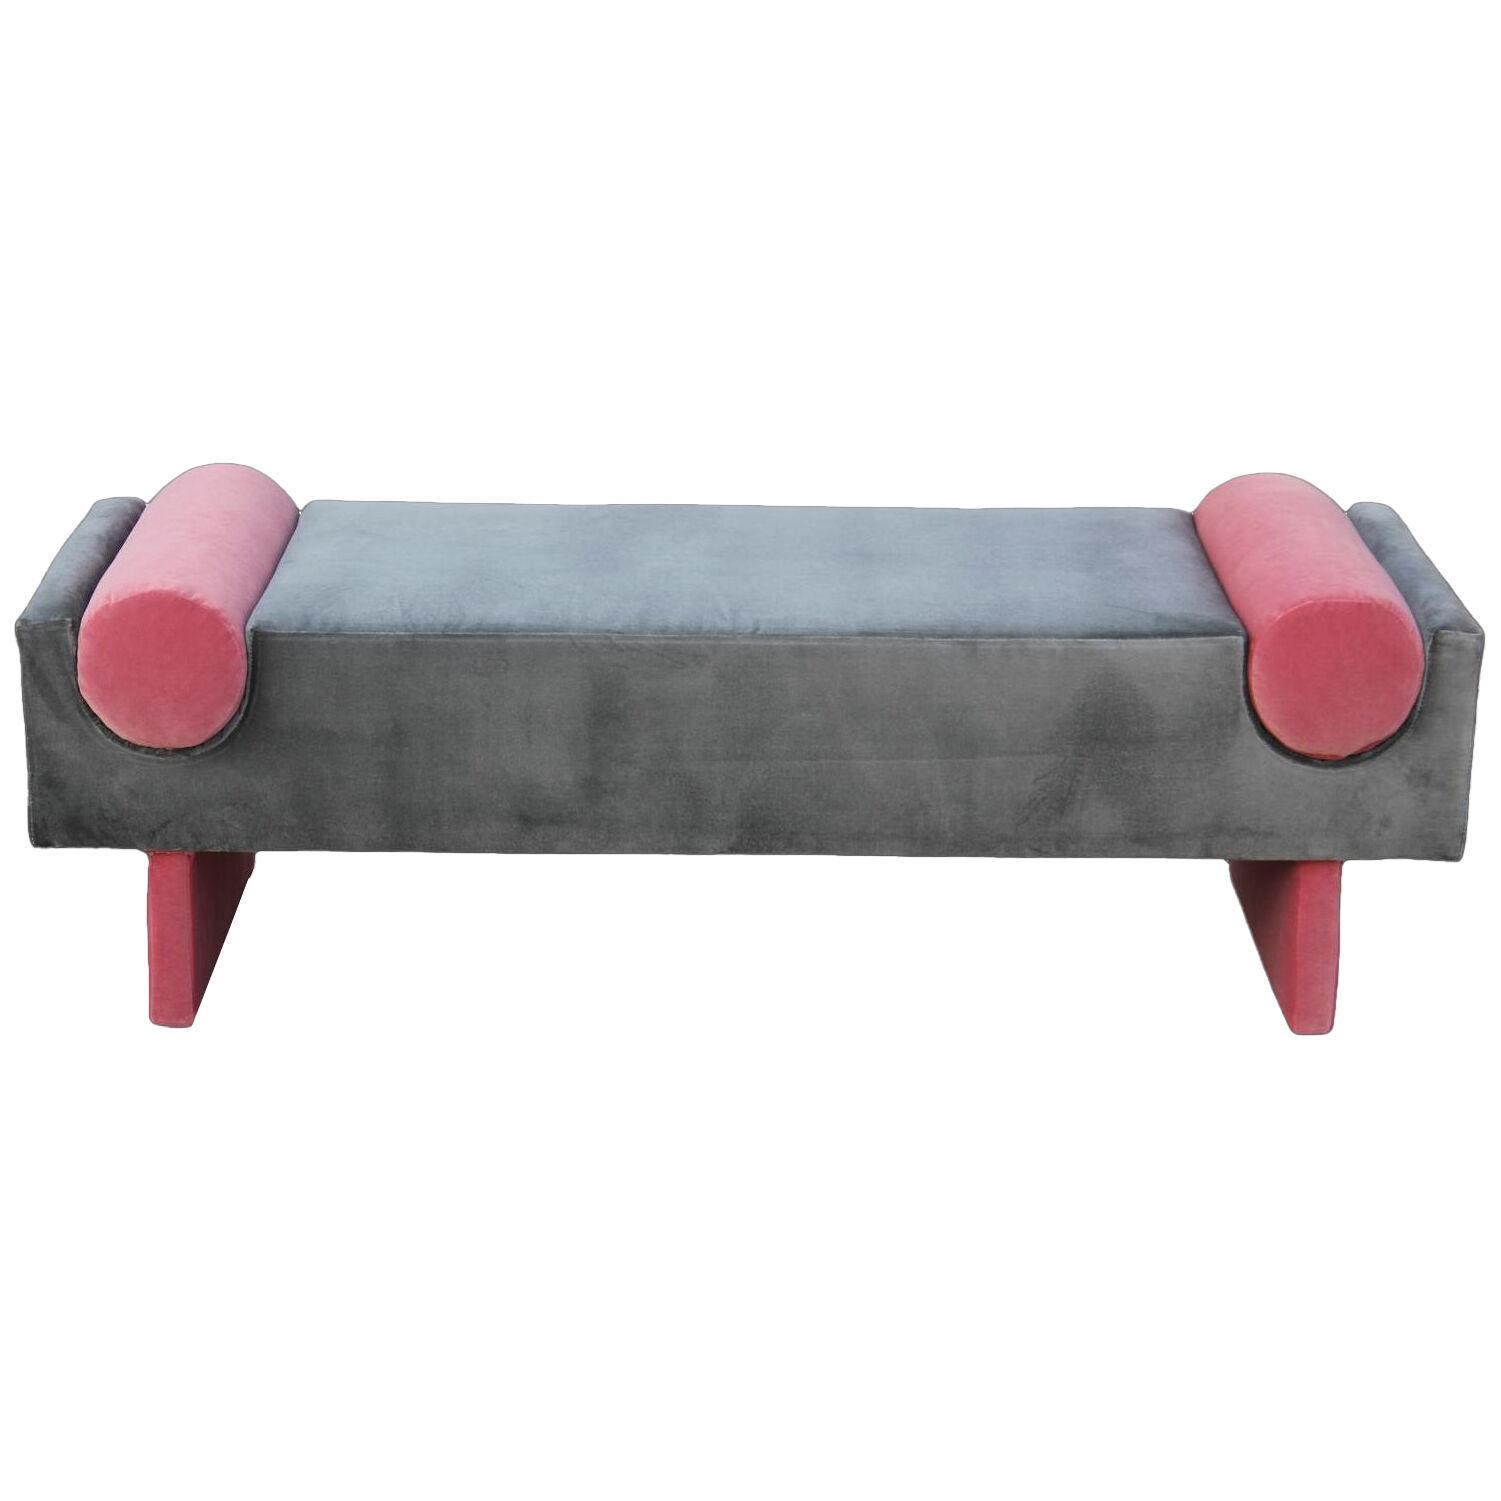 Modern Custom Bench in Dark Grey Velvet with Vibrant Pink Bolsters 2010s